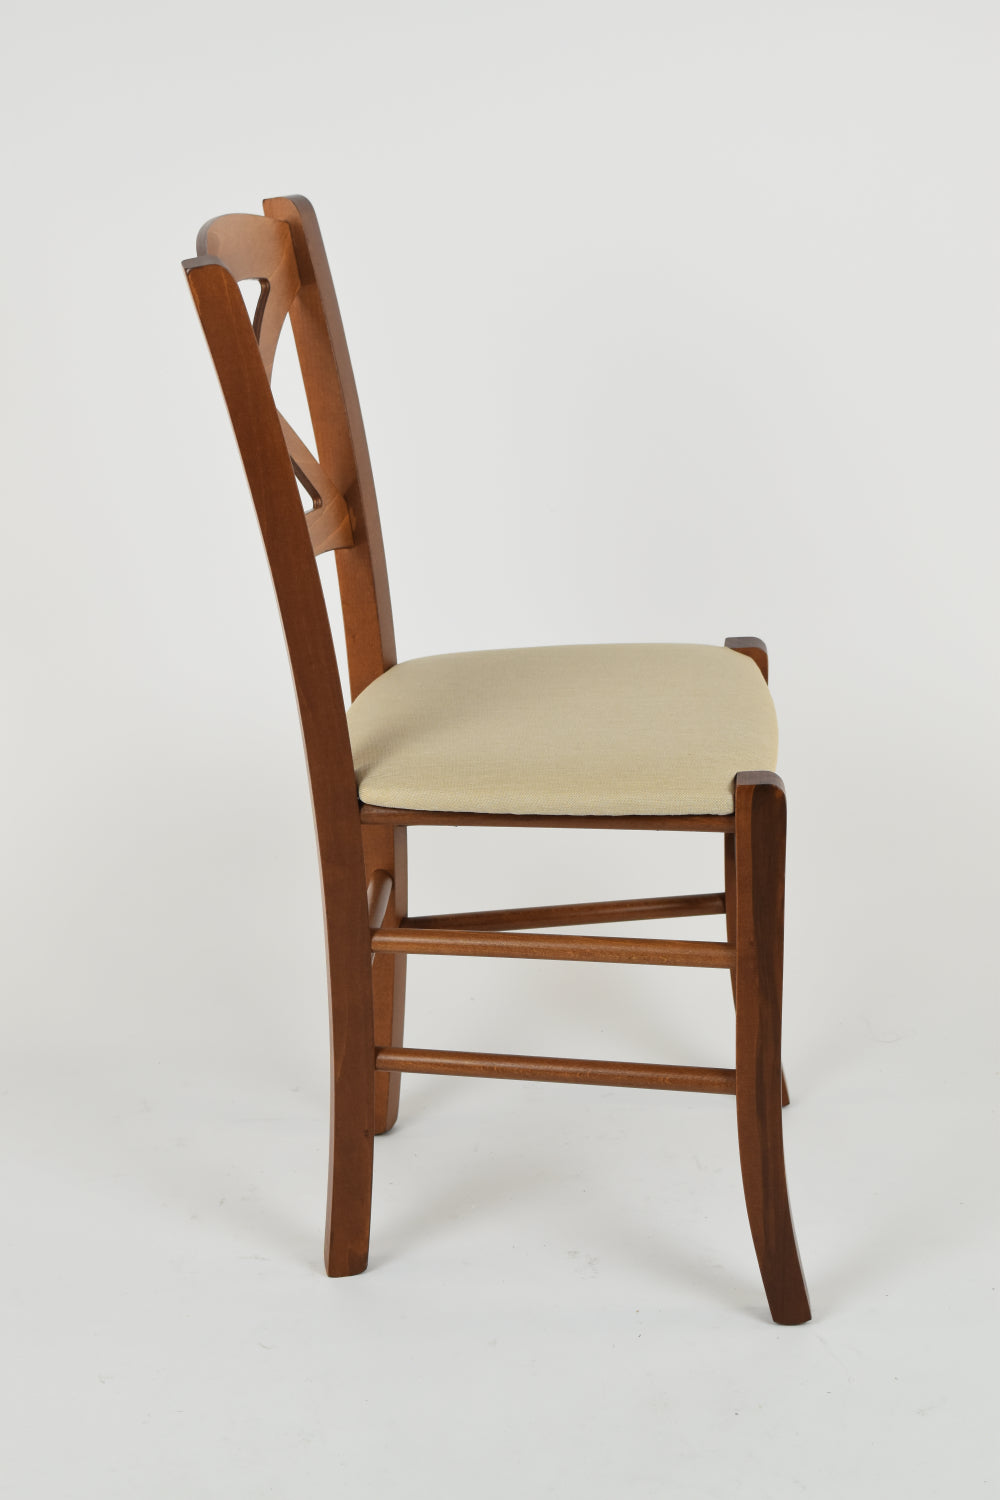 Tommychairs - Set 2 sillas de Cocina y Comedor Cross, Estructura en Madera de Haya Color Nuez Claro y Asiento tapizado en Tejido Color cáñamo